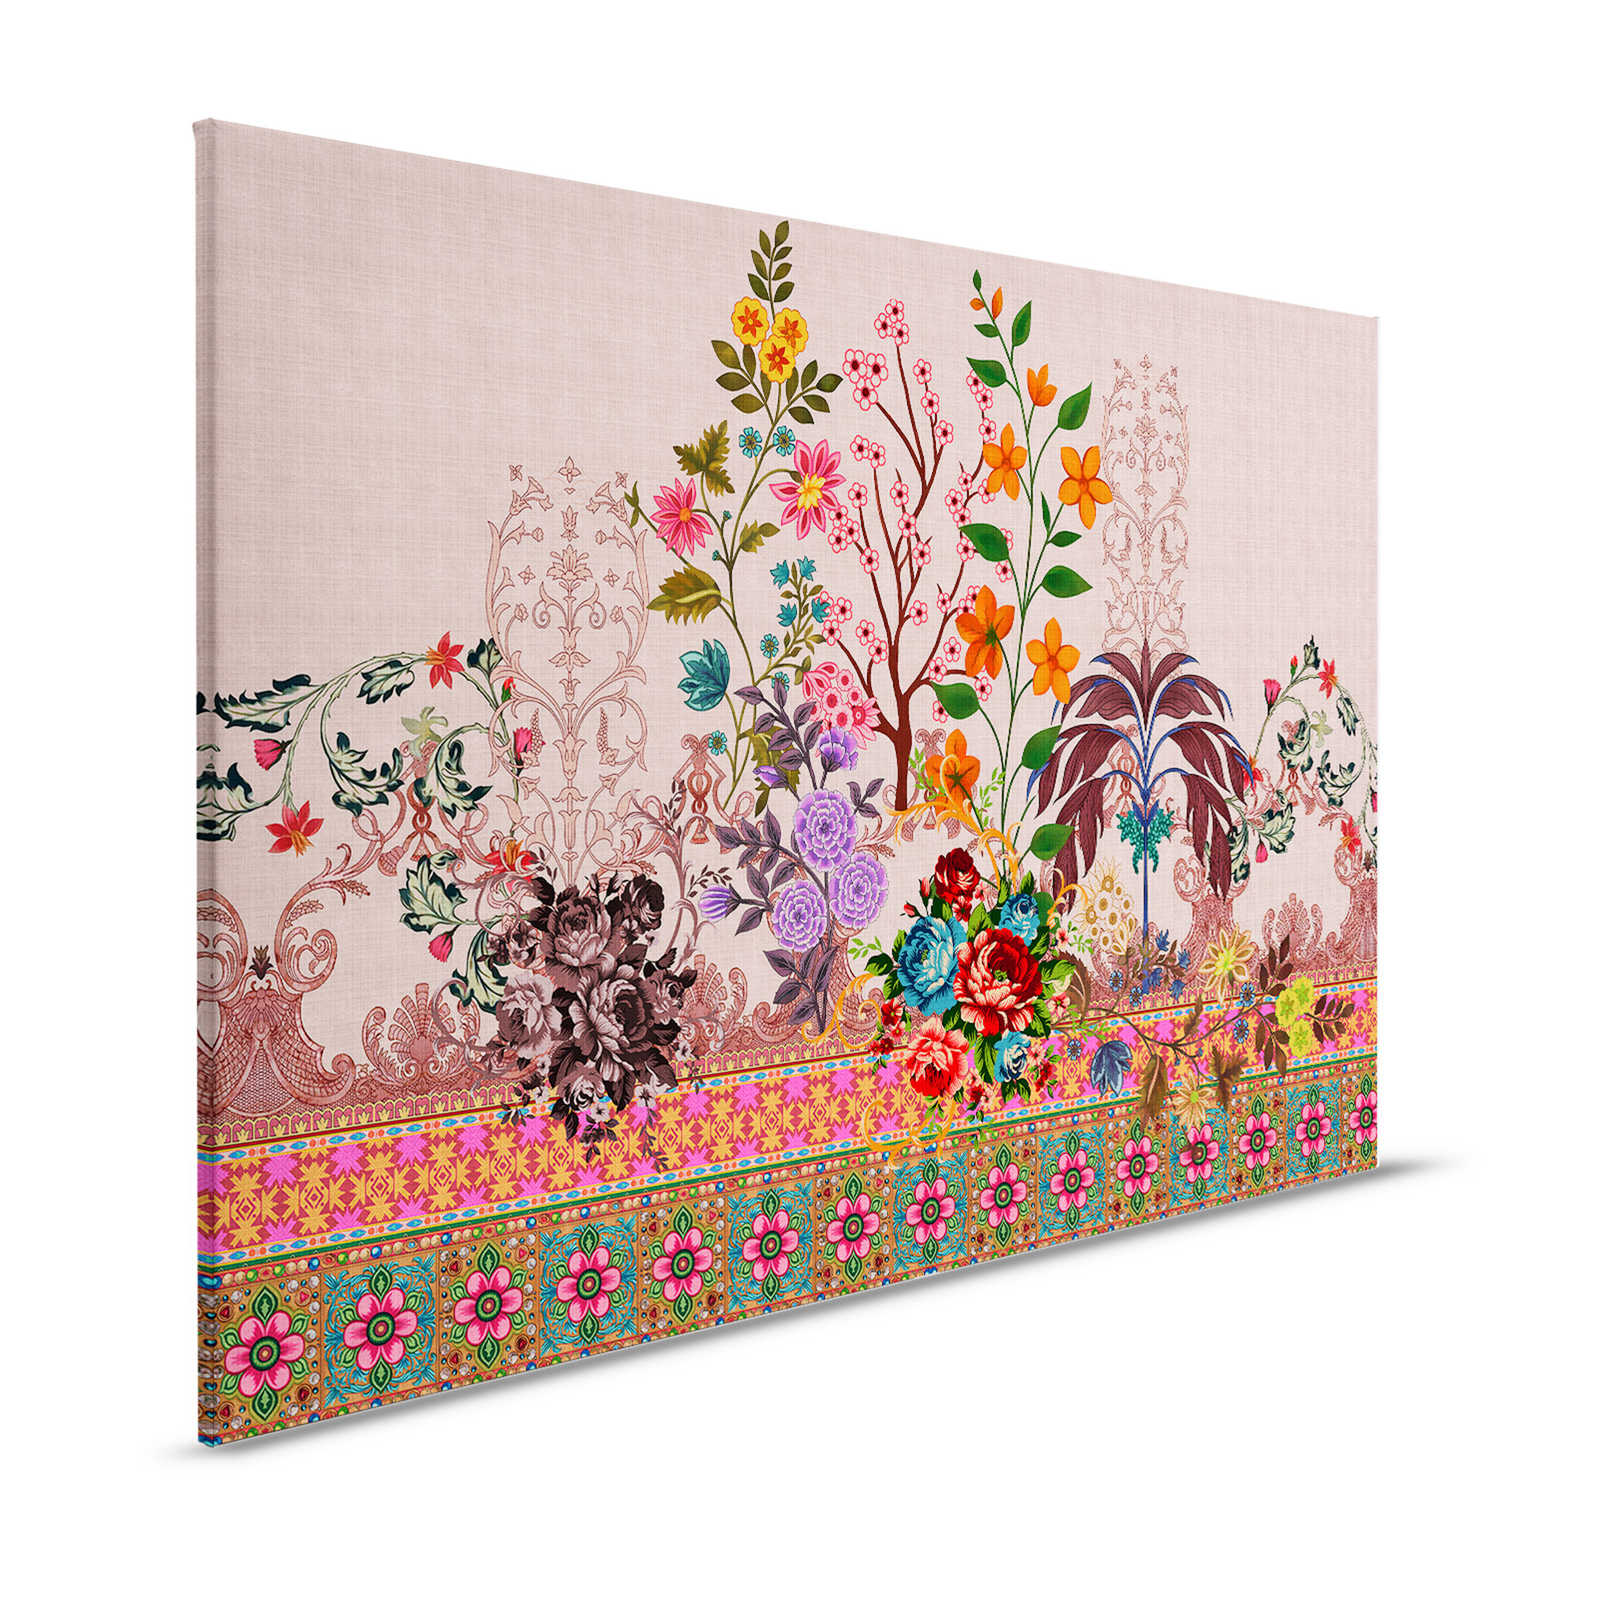 Oriental Garden 4 - Bloemrijk Canvas schilderij Bloesems & randen patroon - 1.20 m x 0.80 m
